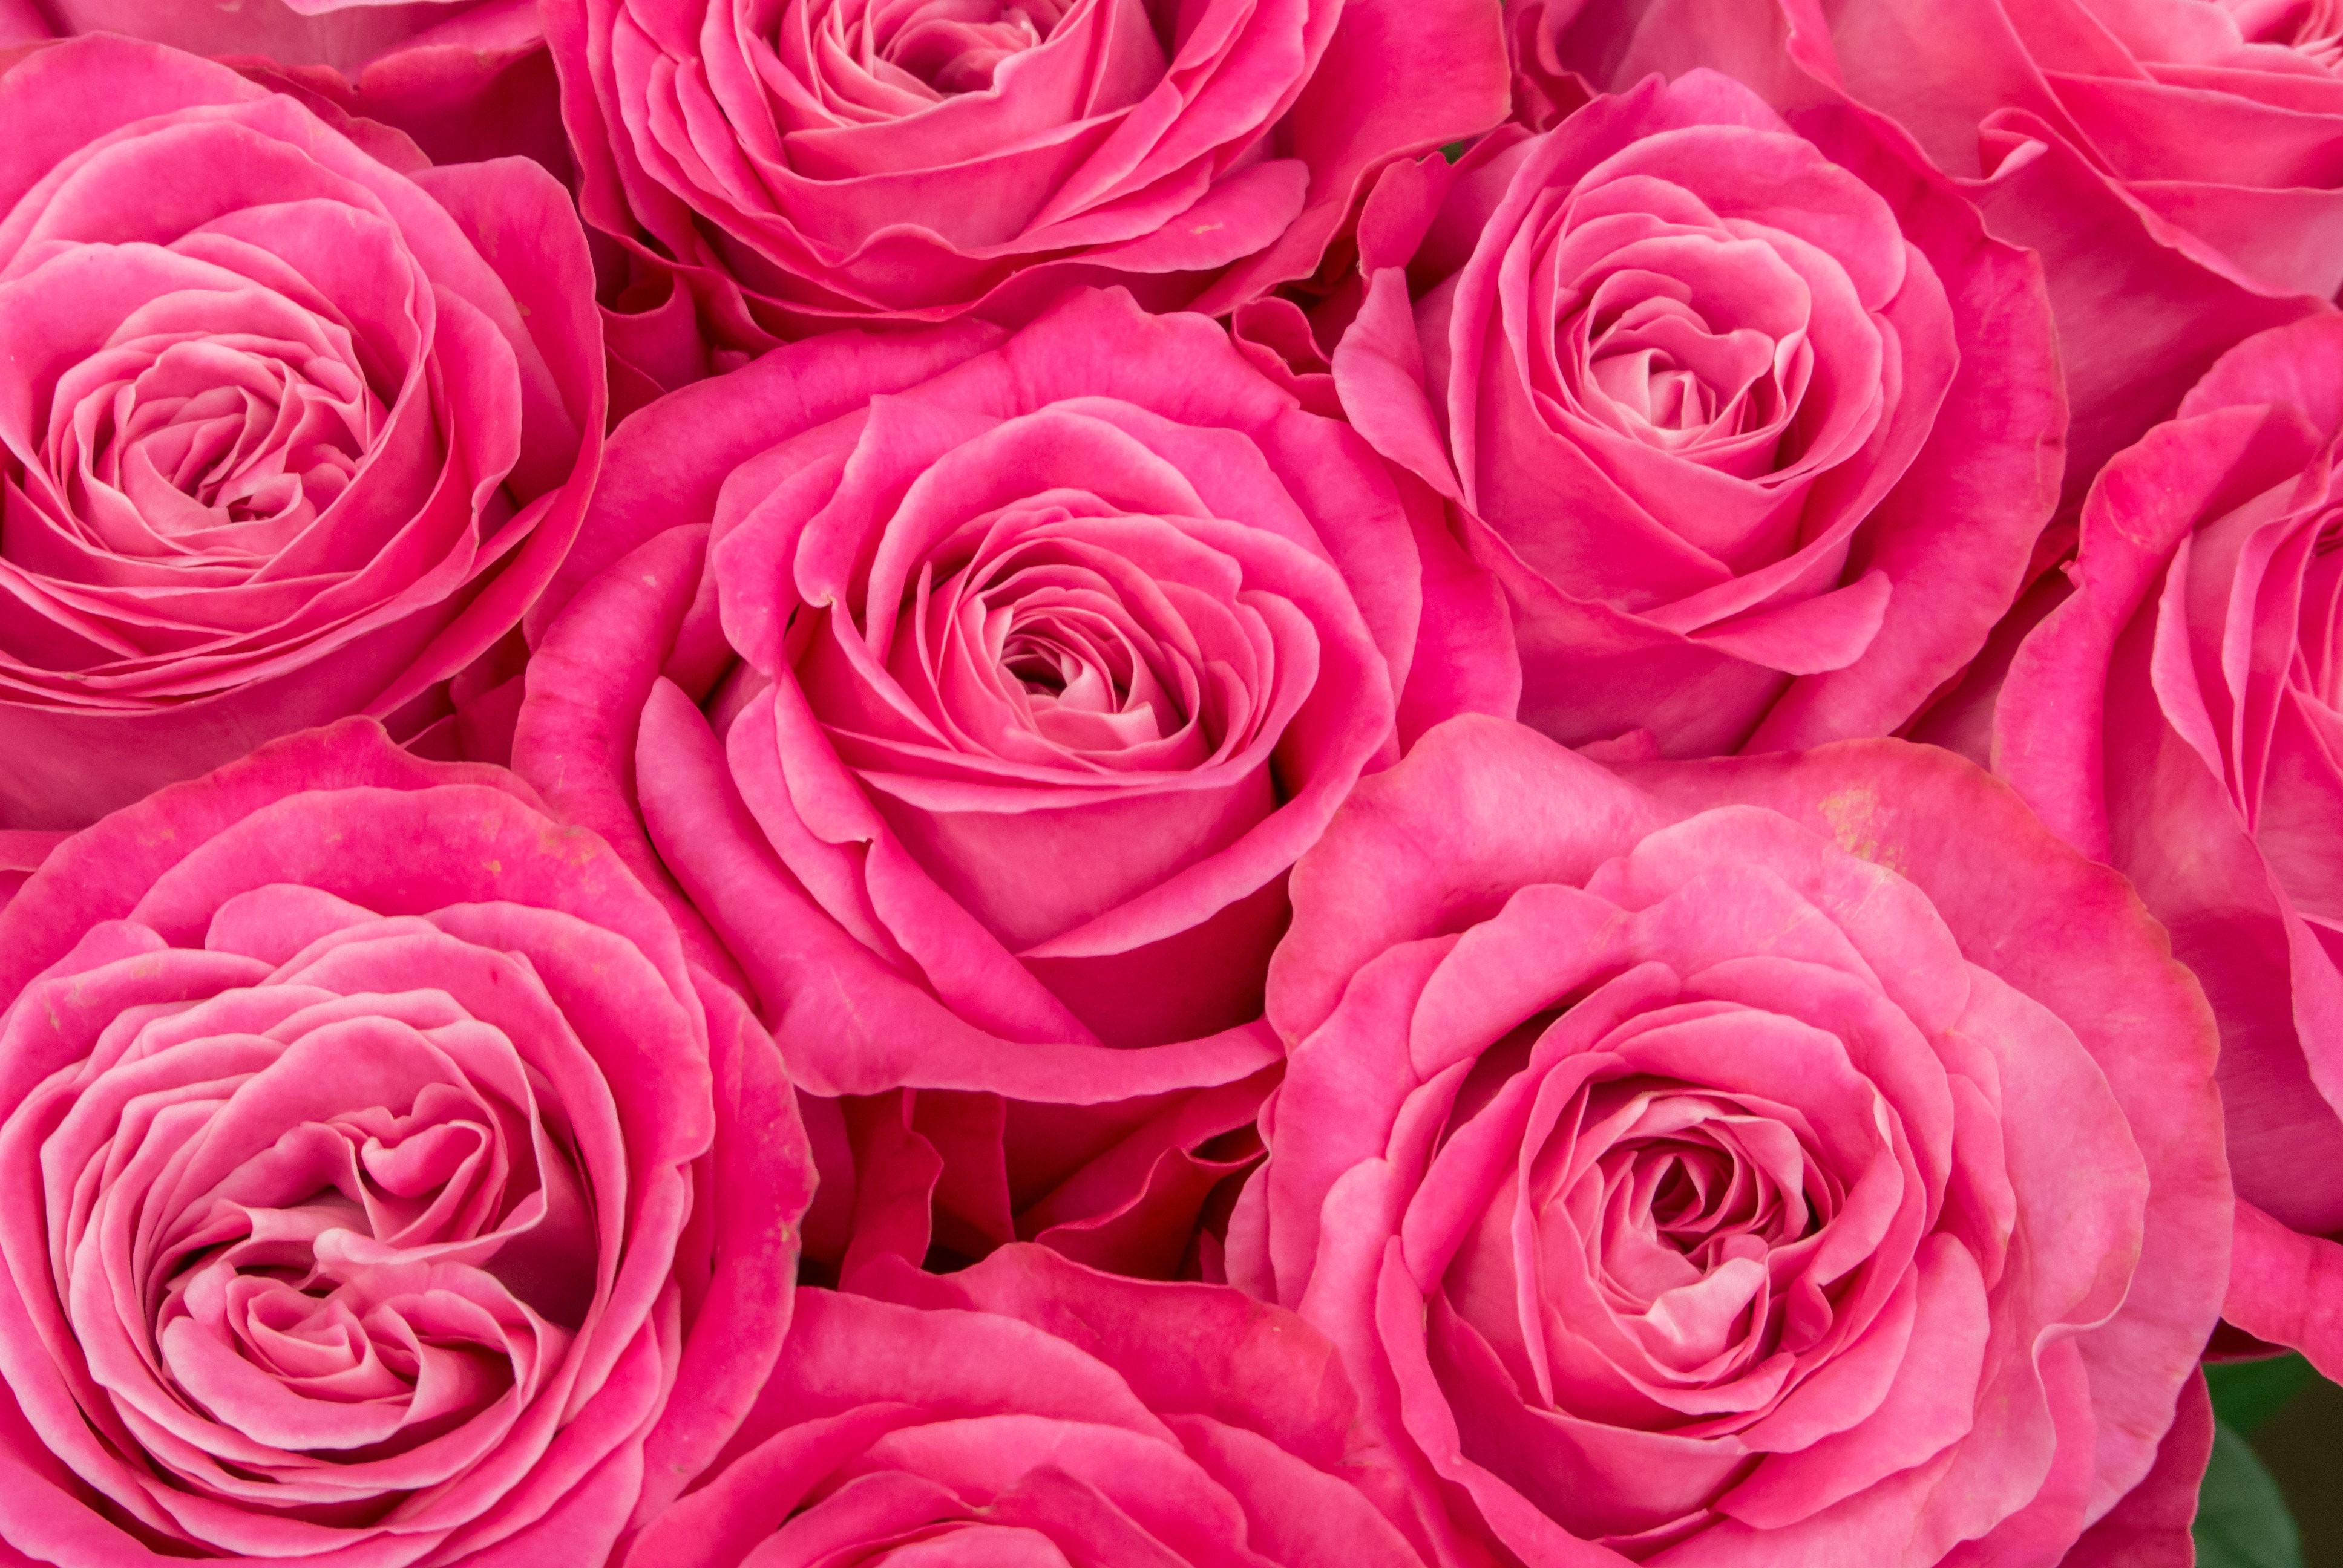 ピンク色の薔薇の花のフリー素材 ぱくたそ